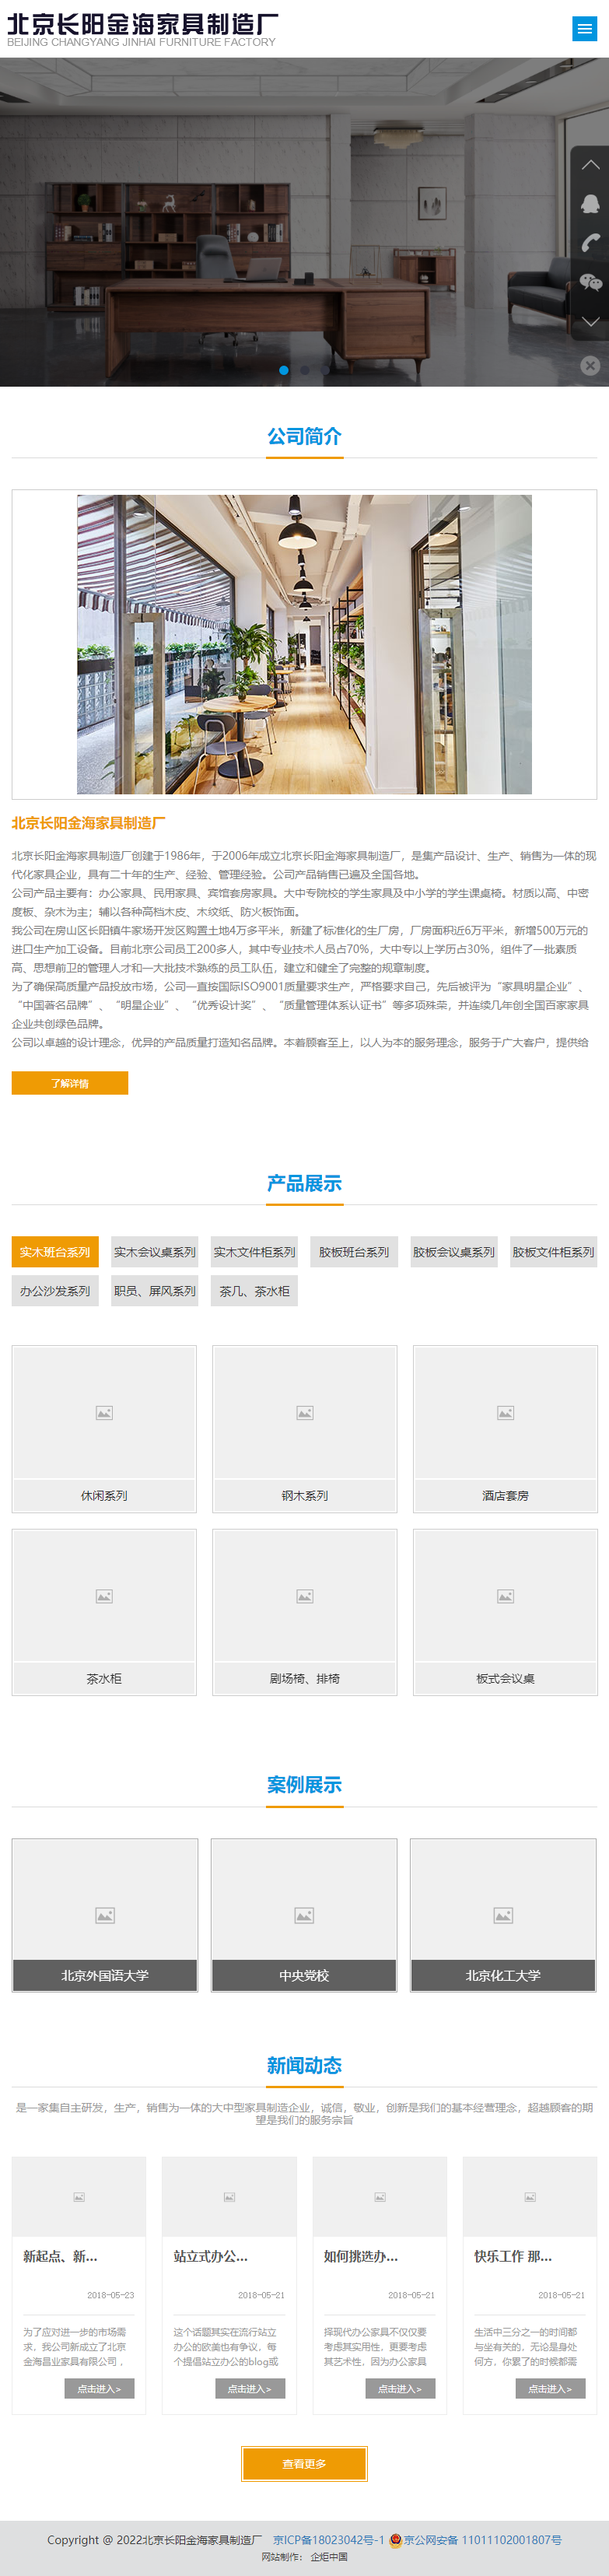 北京长阳金海家具制造厂网站案例